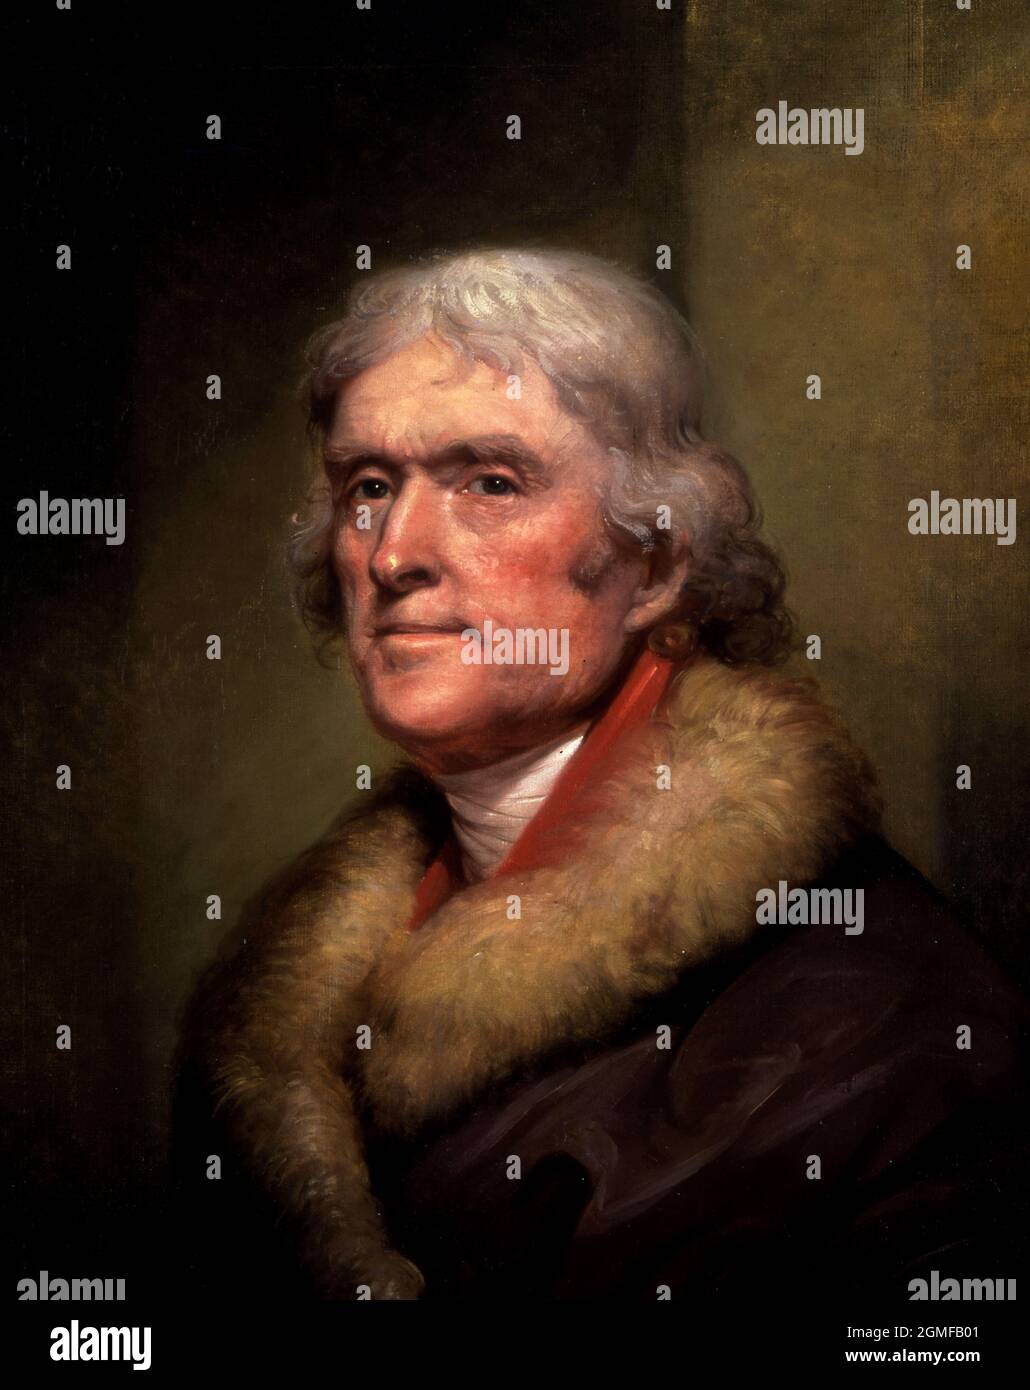 Thomas Jefferson. Porträt des 3. US-Präsidenten Thomas Jefferson (1743-1826) von Rembrandt Peale (1778-1860), Öl auf Leinen, 1805 Stockfoto